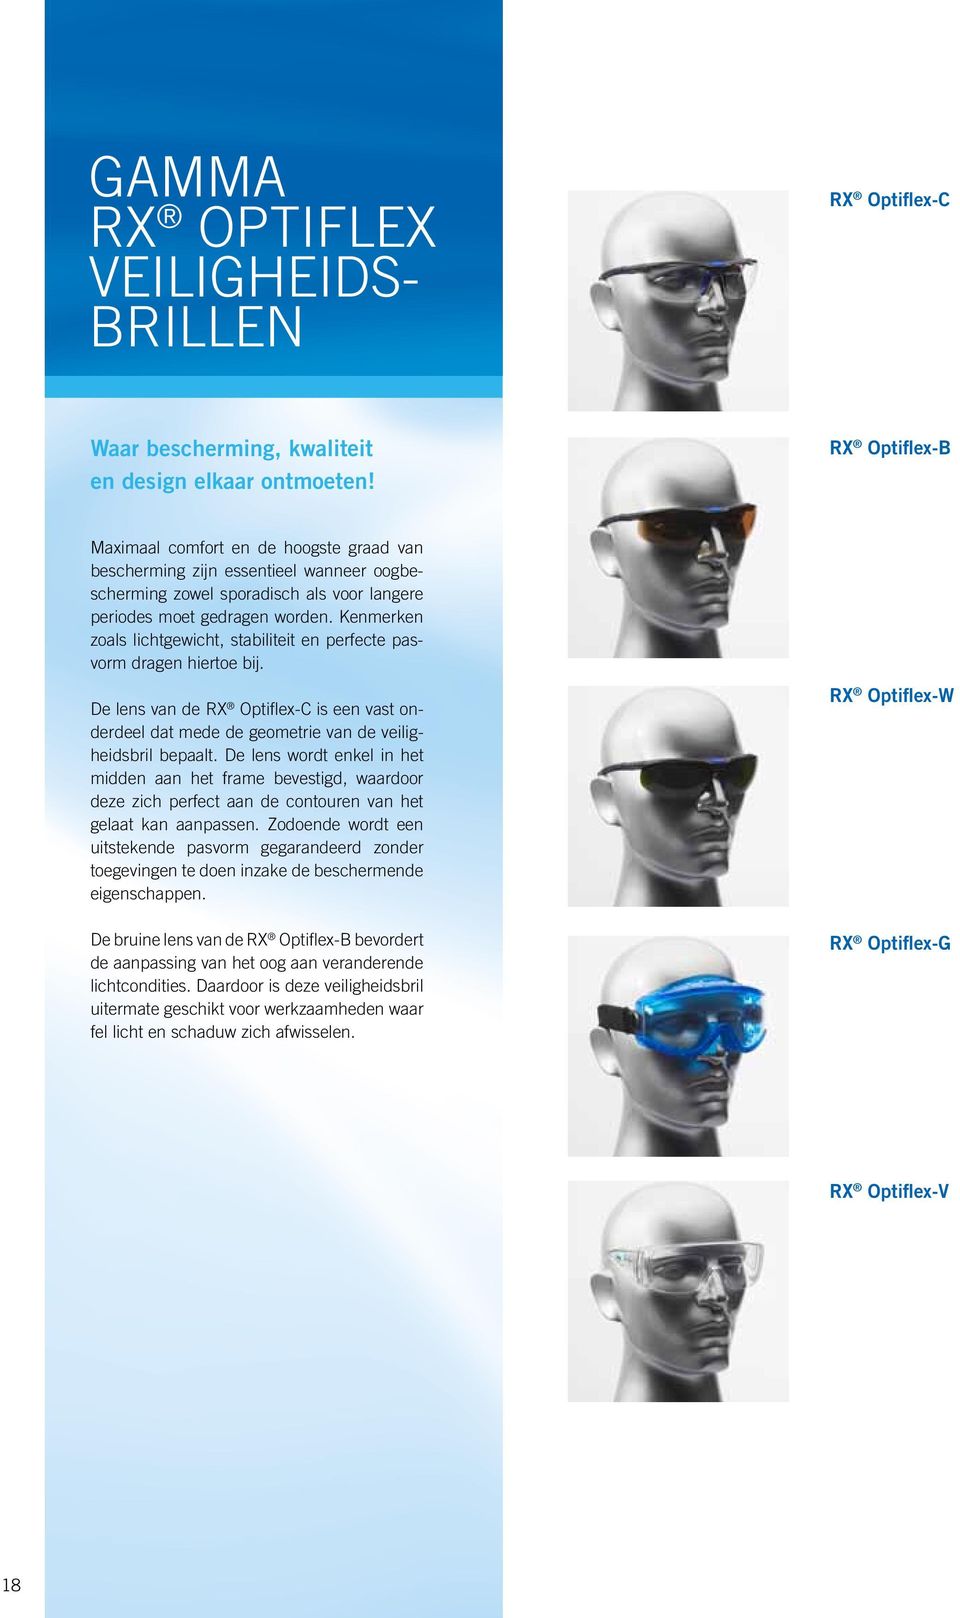 Kenmerken zoals lichtgewicht, stabiliteit en perfecte pasvorm dragen hiertoe bij. De lens van de RX Optiflex-C is een vast onderdeel dat mede de geometrie van de veiligheidsbril bepaalt.